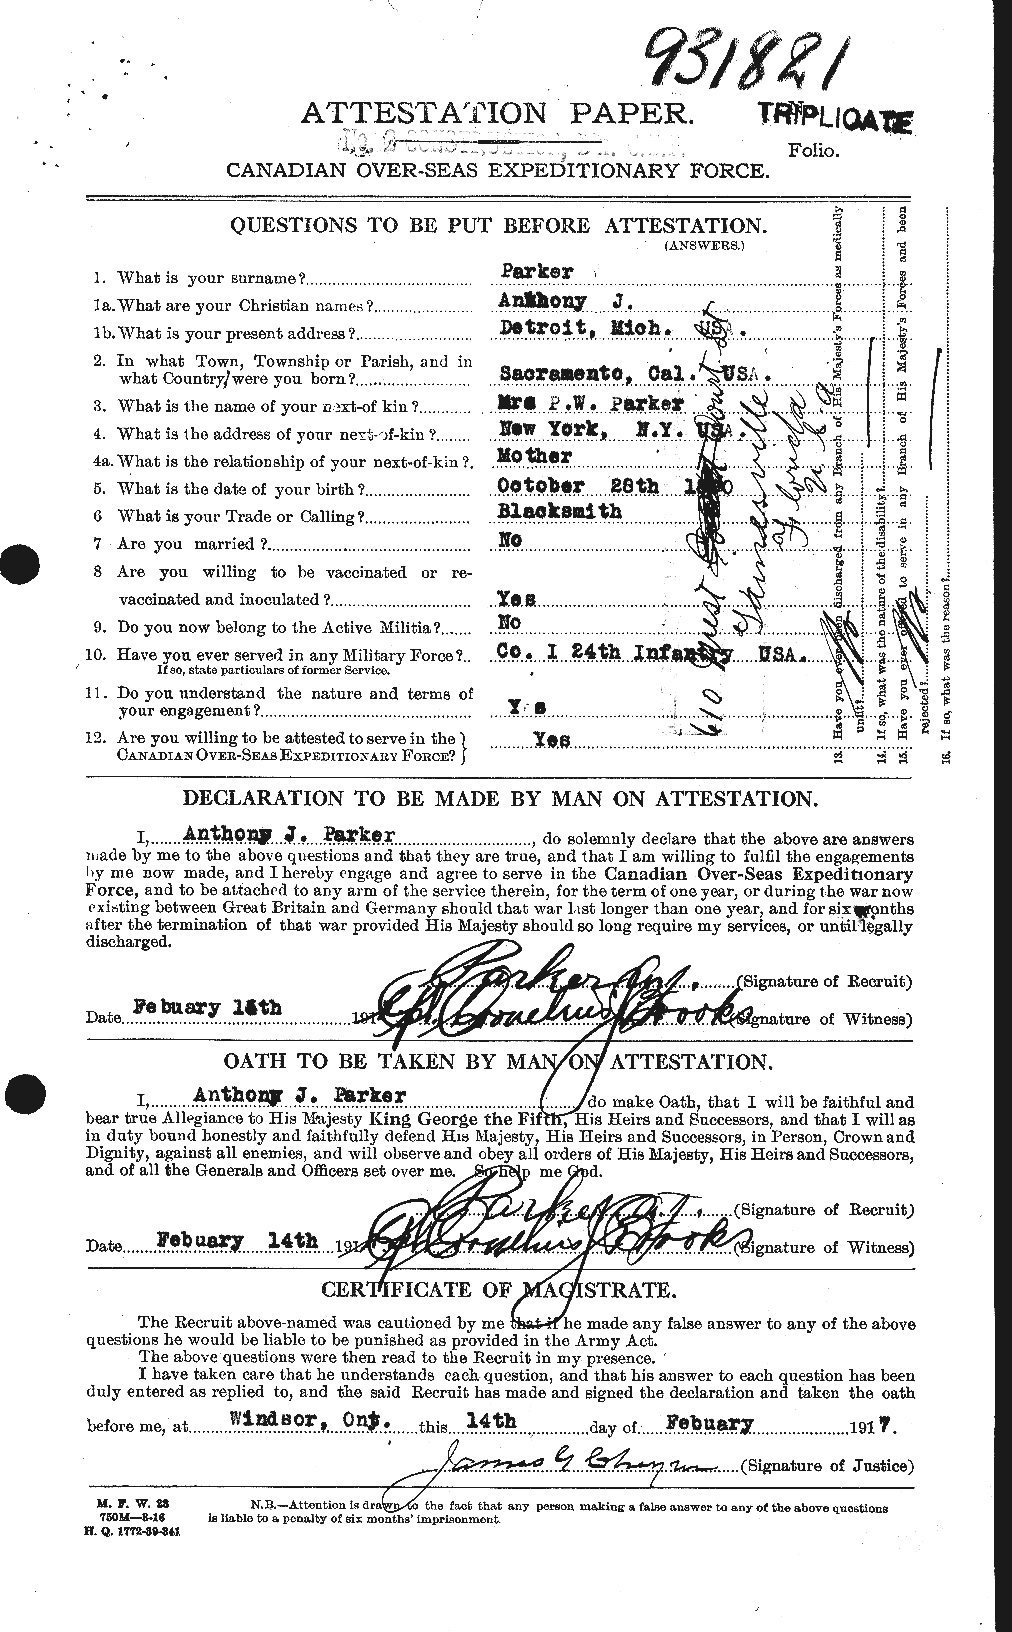 Dossiers du Personnel de la Première Guerre mondiale - CEC 565000a